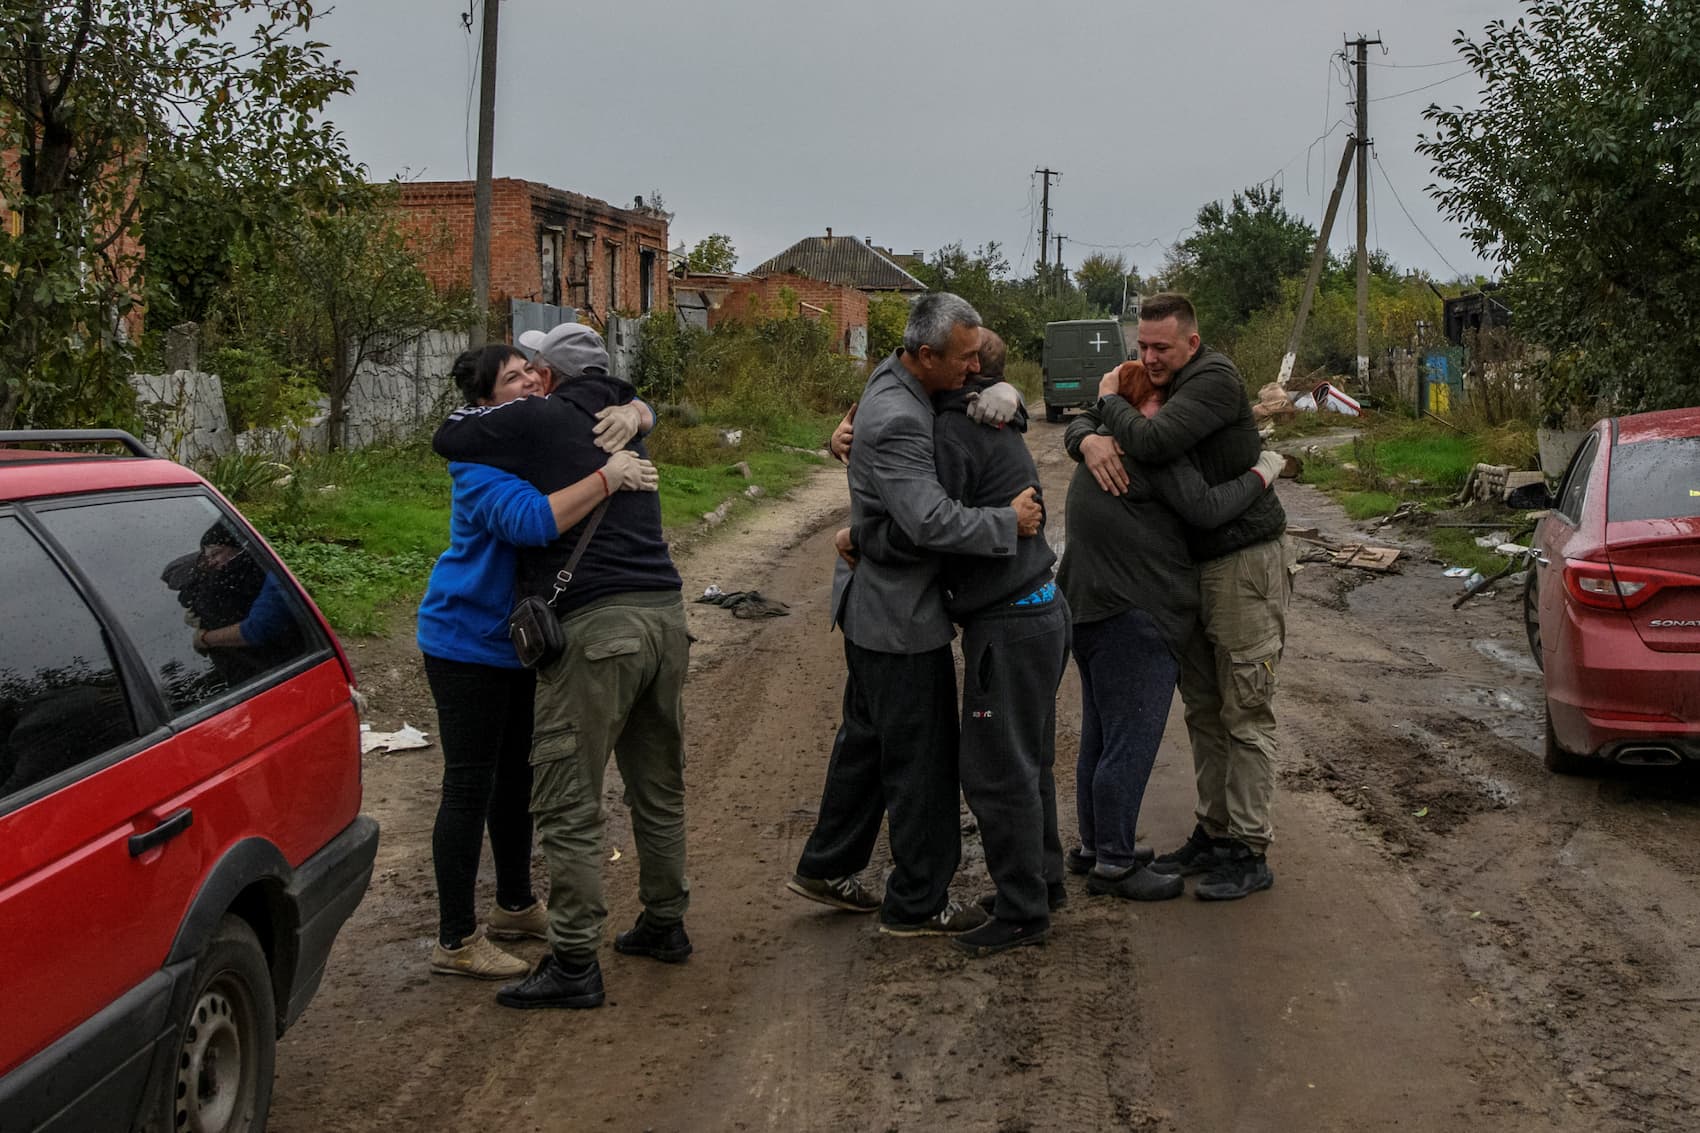 Vizinhos abraçam-se no regresso a casa em Kamianka, na região de Kharkiv